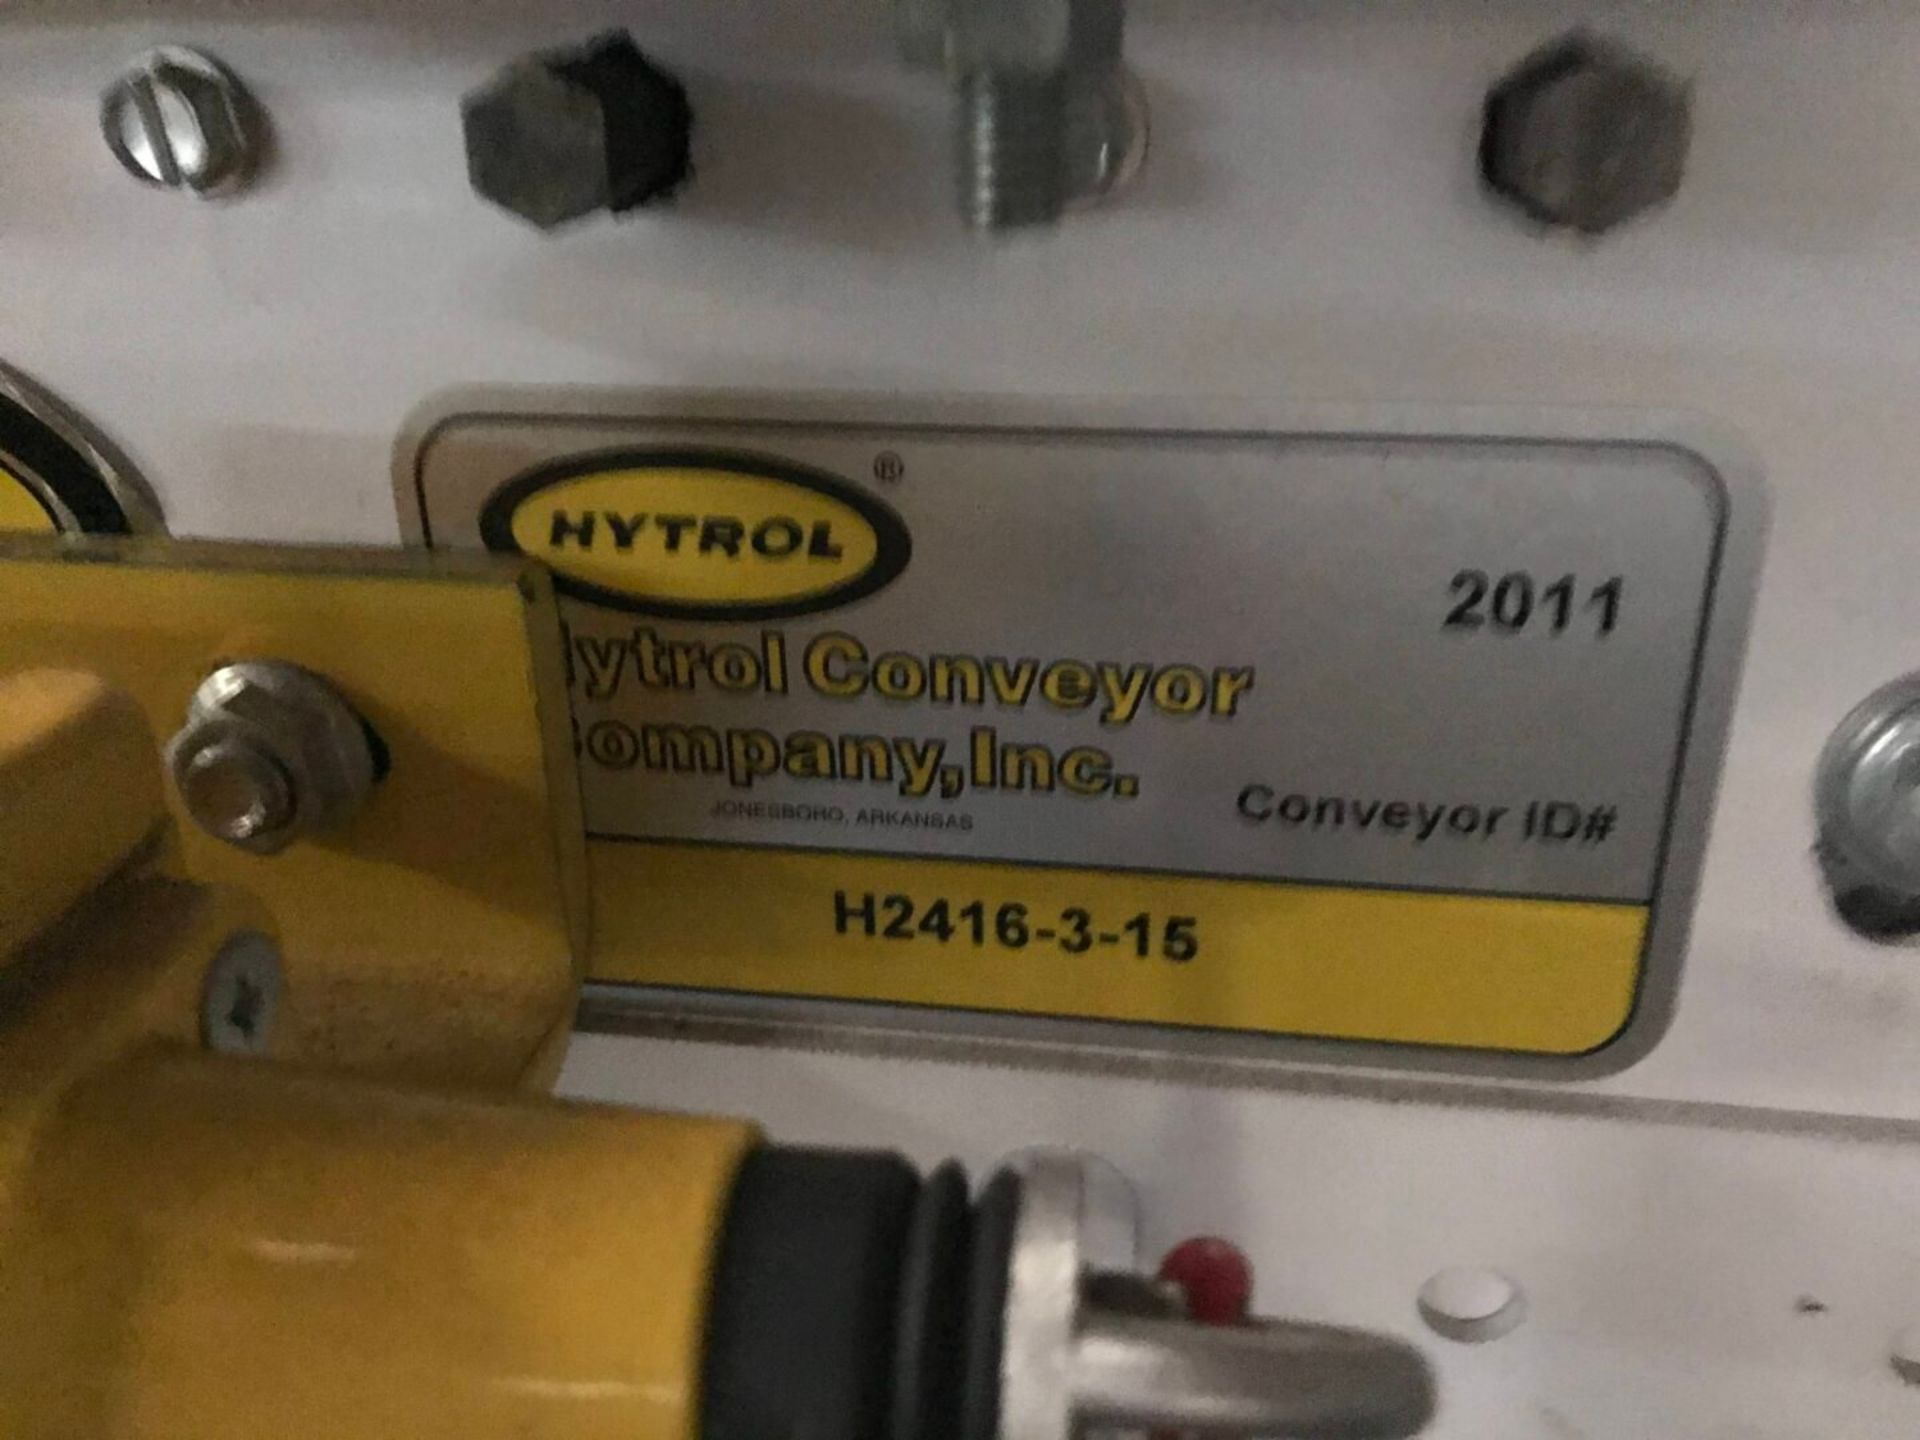 Hytrol Roller Conveyor H2416-3-15 - Bild 5 aus 5